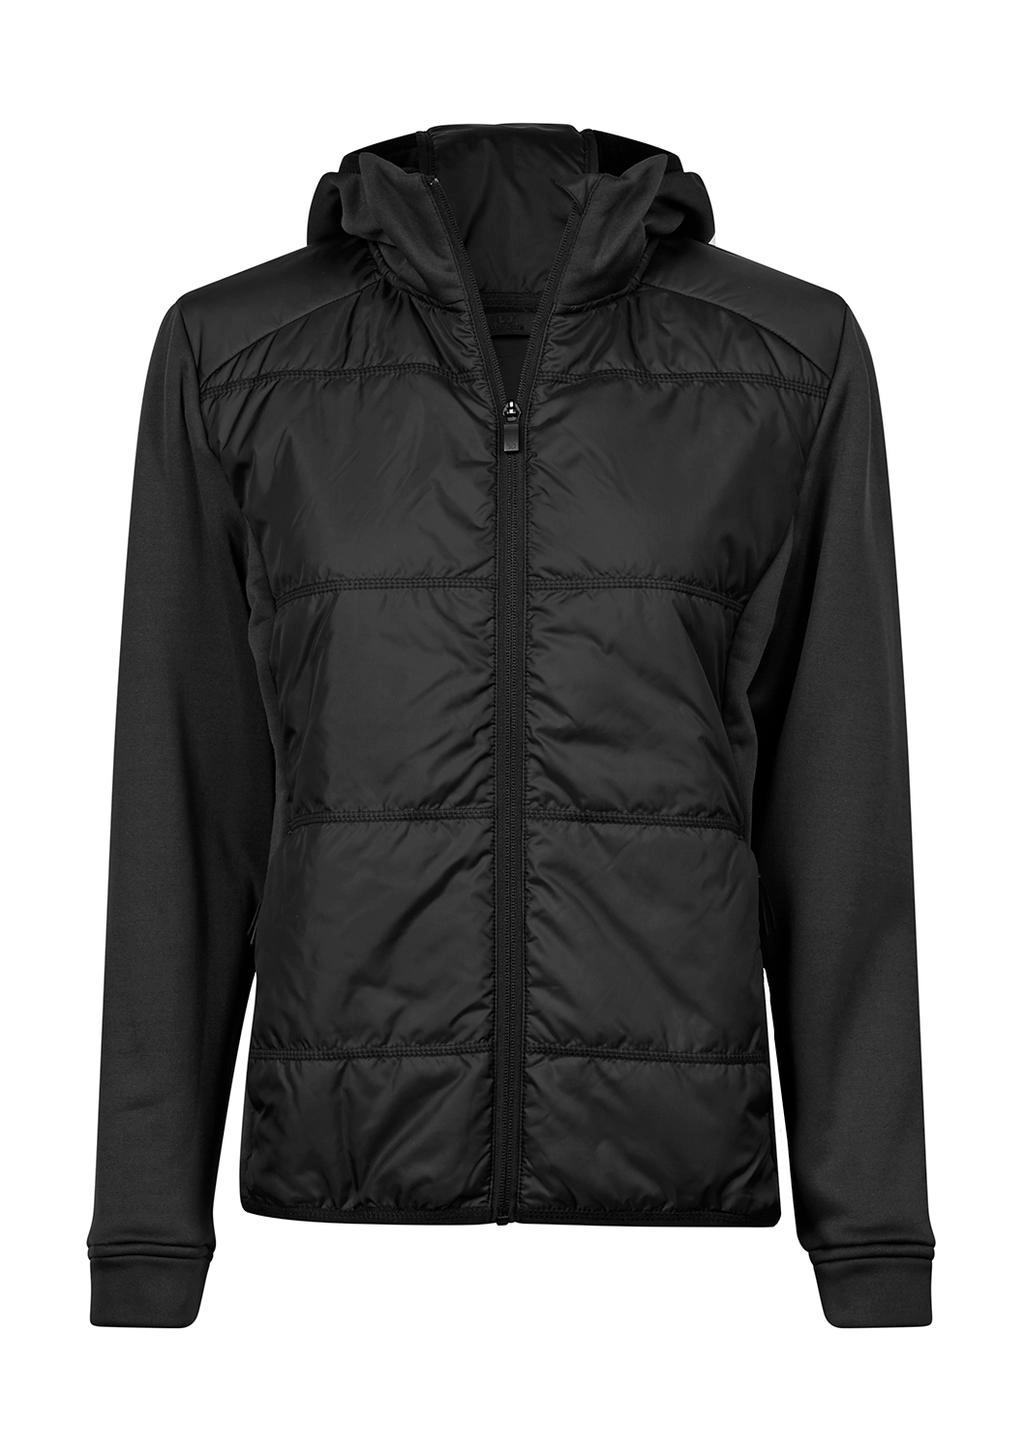 Womens Hybrid-Stretch Hooded Jacket zum Besticken und Bedrucken in der Farbe Black/Black mit Ihren Logo, Schriftzug oder Motiv.